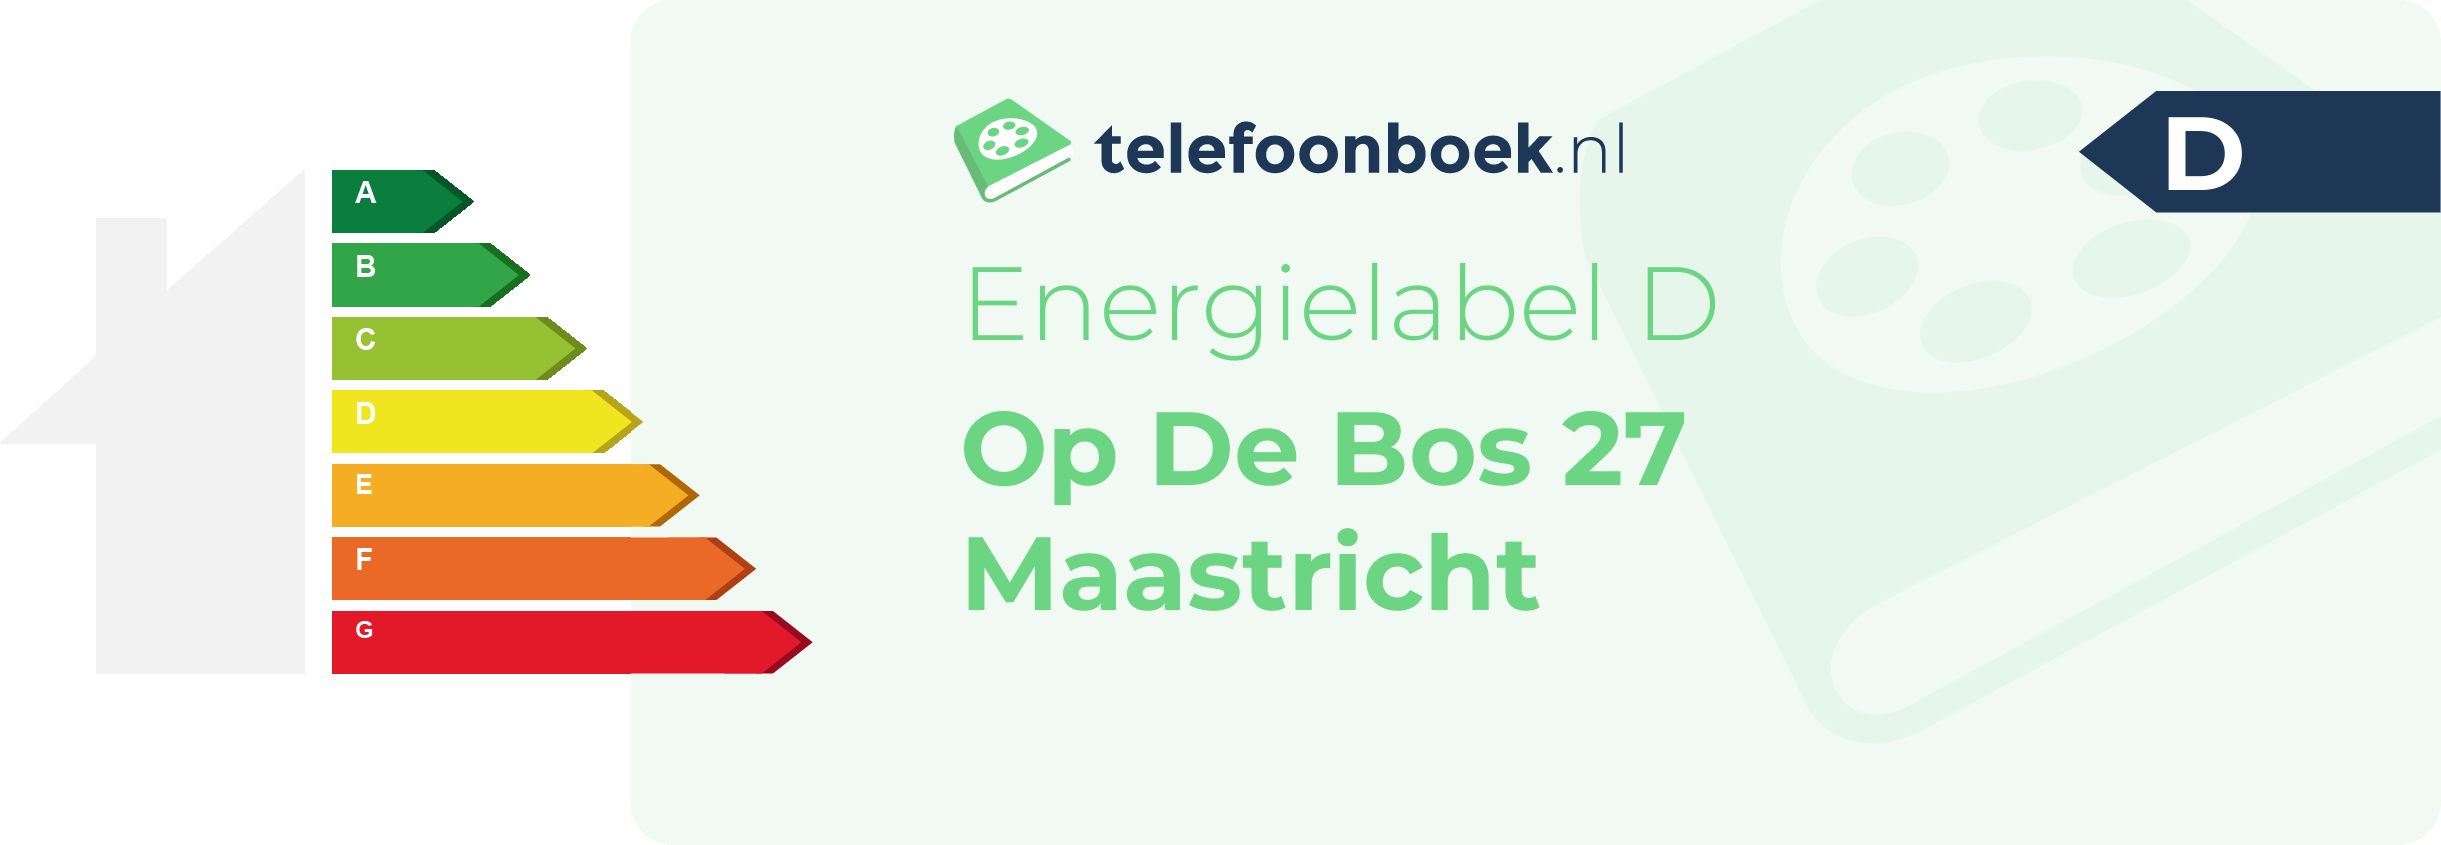 Energielabel Op De Bos 27 Maastricht